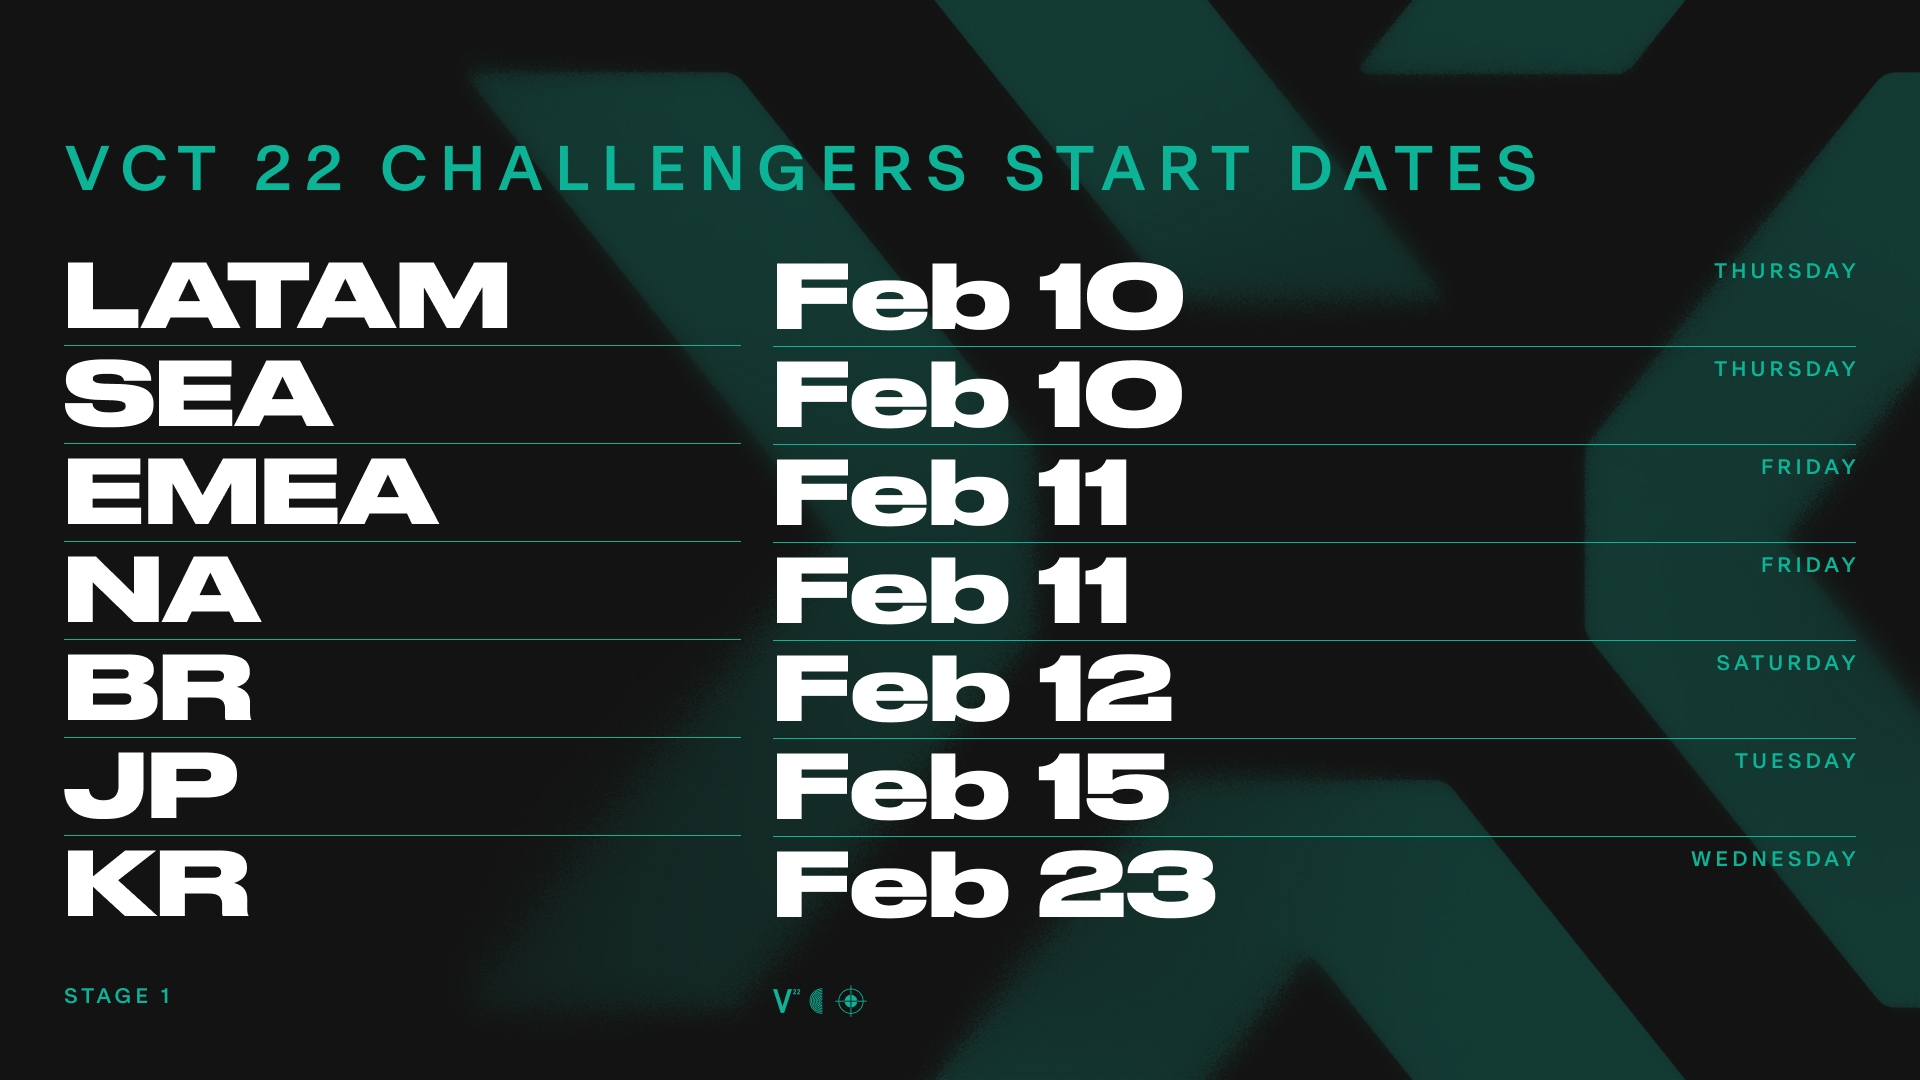 03_Challengers_Start_Dates.jpg